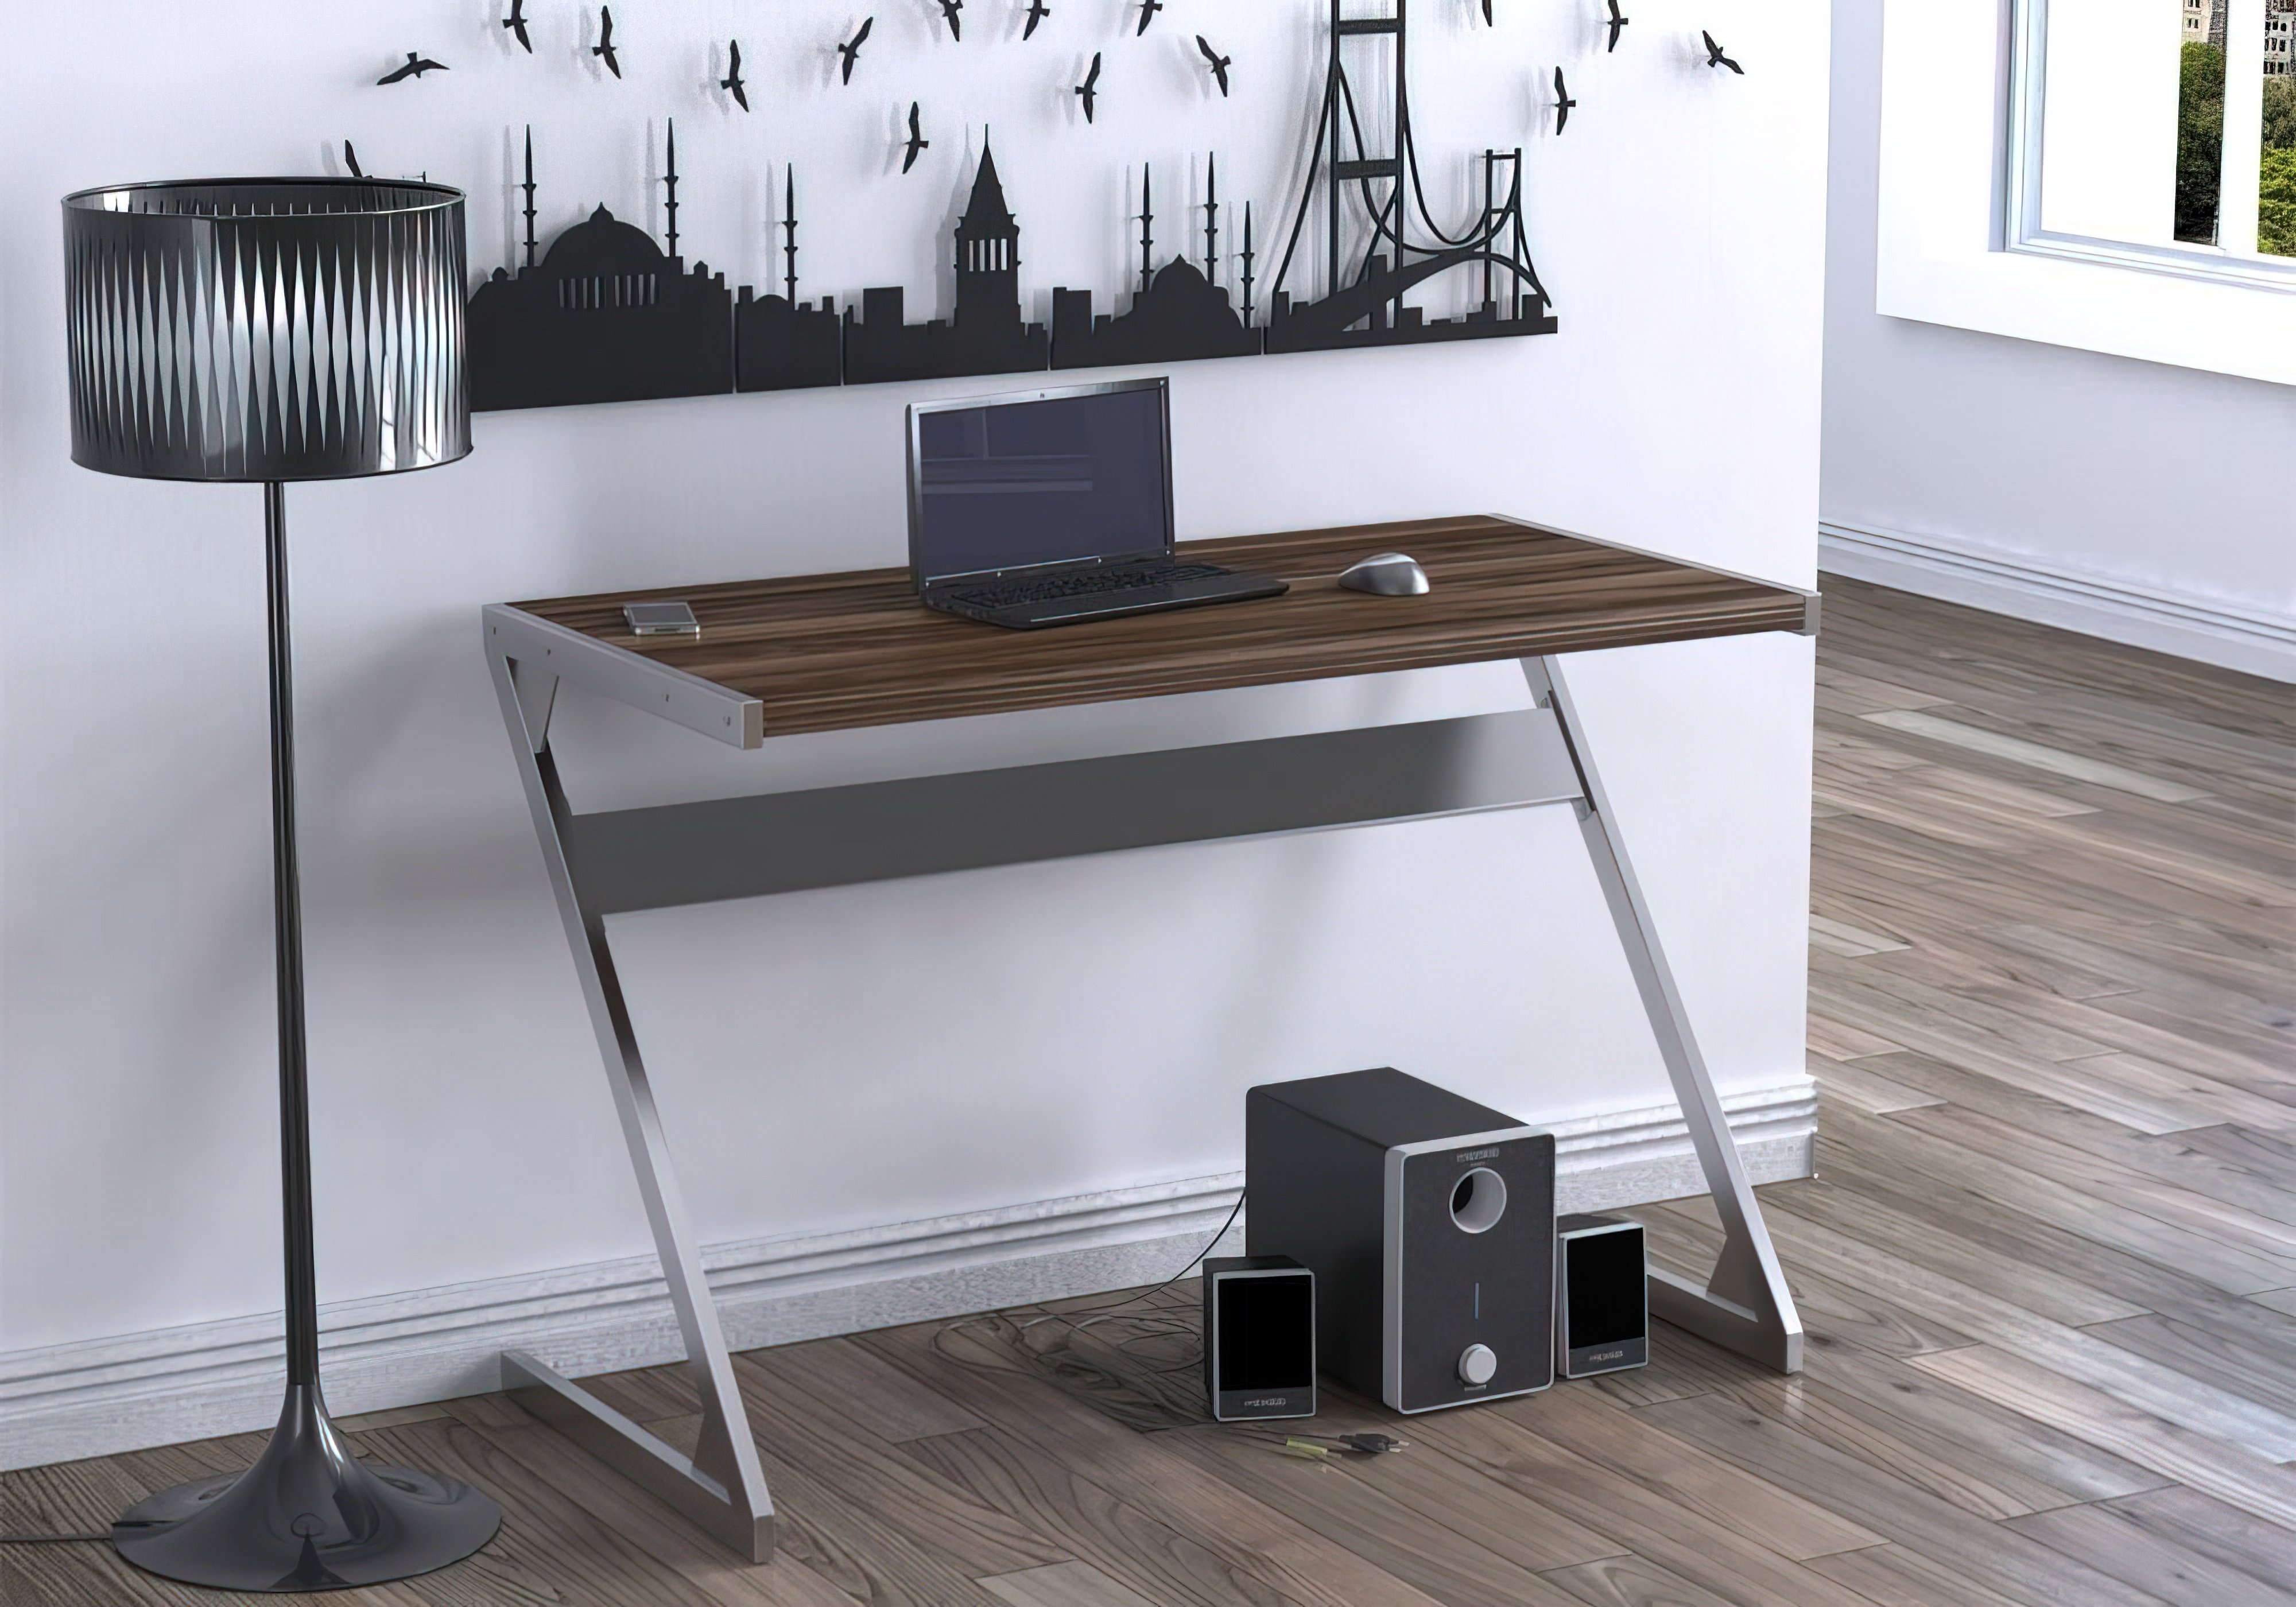  Купить Офисные столы Стол офисный "Z-110" Loft Design